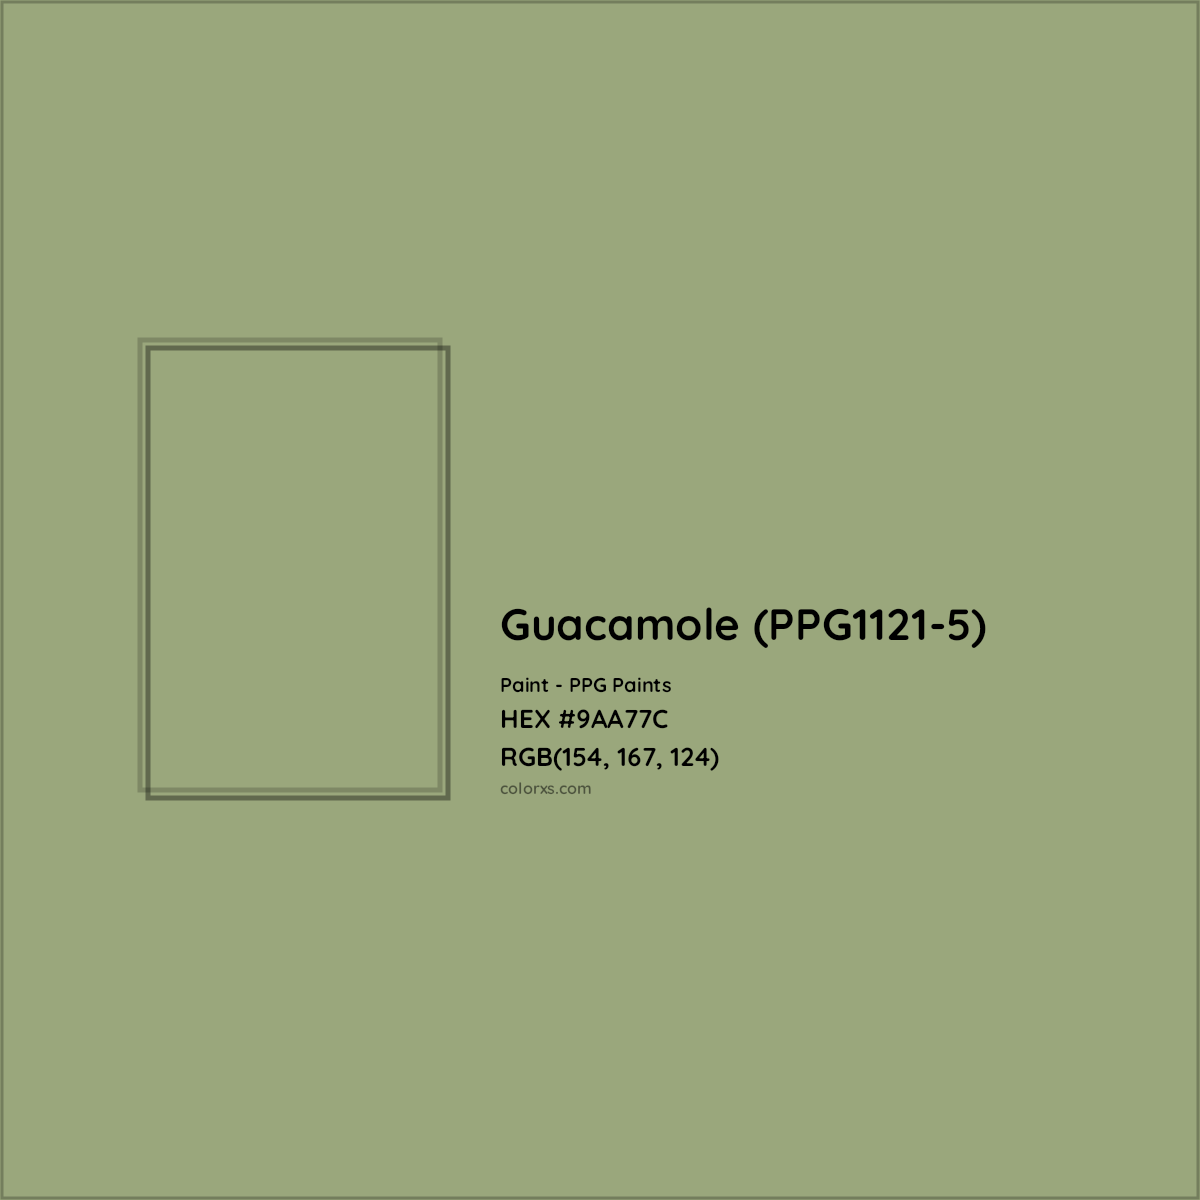 HEX #9AA77C Guacamole (PPG1121-5) Paint PPG Paints - Color Code